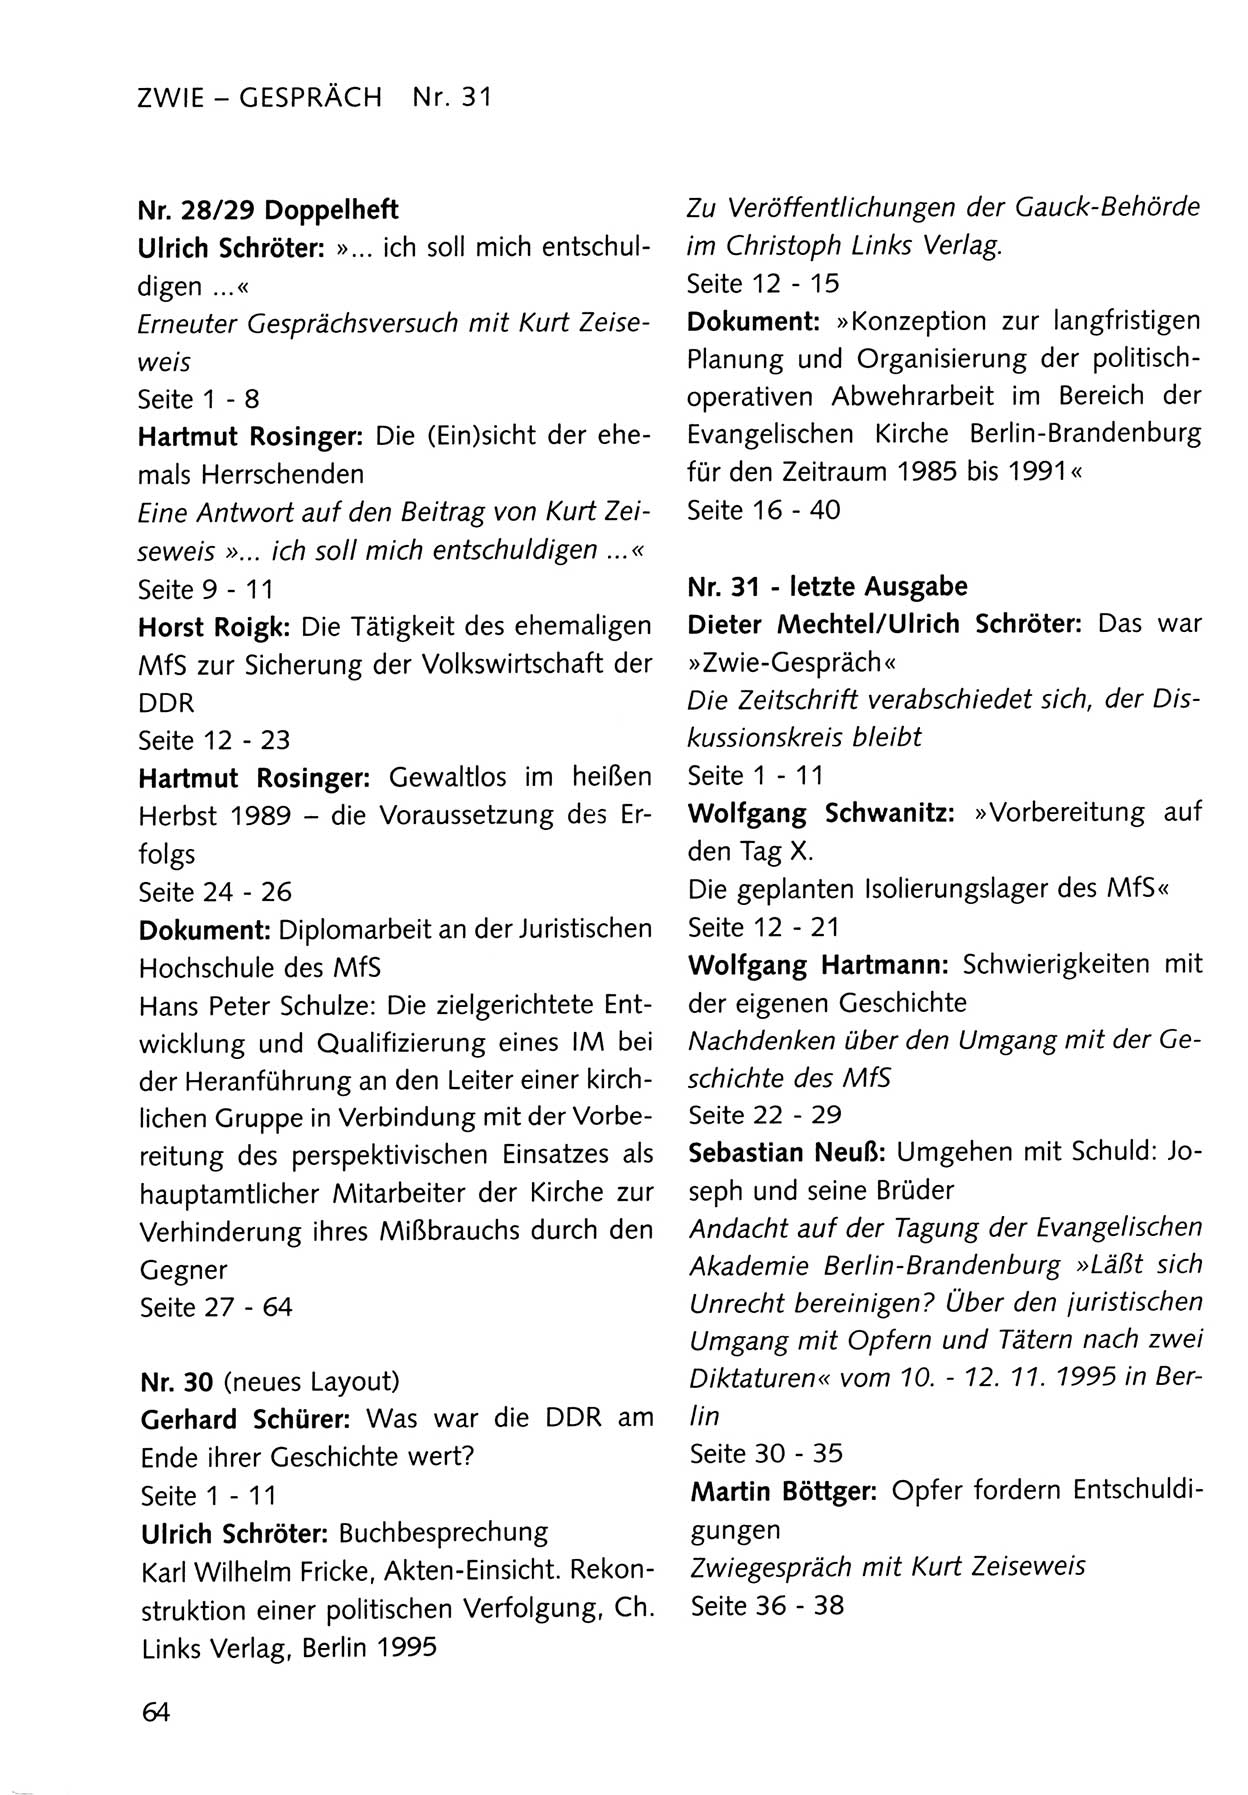 Zwie-Gespräch, Beiträge zum Umgang mit der Staatssicherheits-Vergangenheit [Deutsche Demokratische Republik (DDR)], Ausgabe Nr. 31, Berlin 1995, Seite 64 (Zwie-Gespr. Ausg. 31 1995, S. 64)